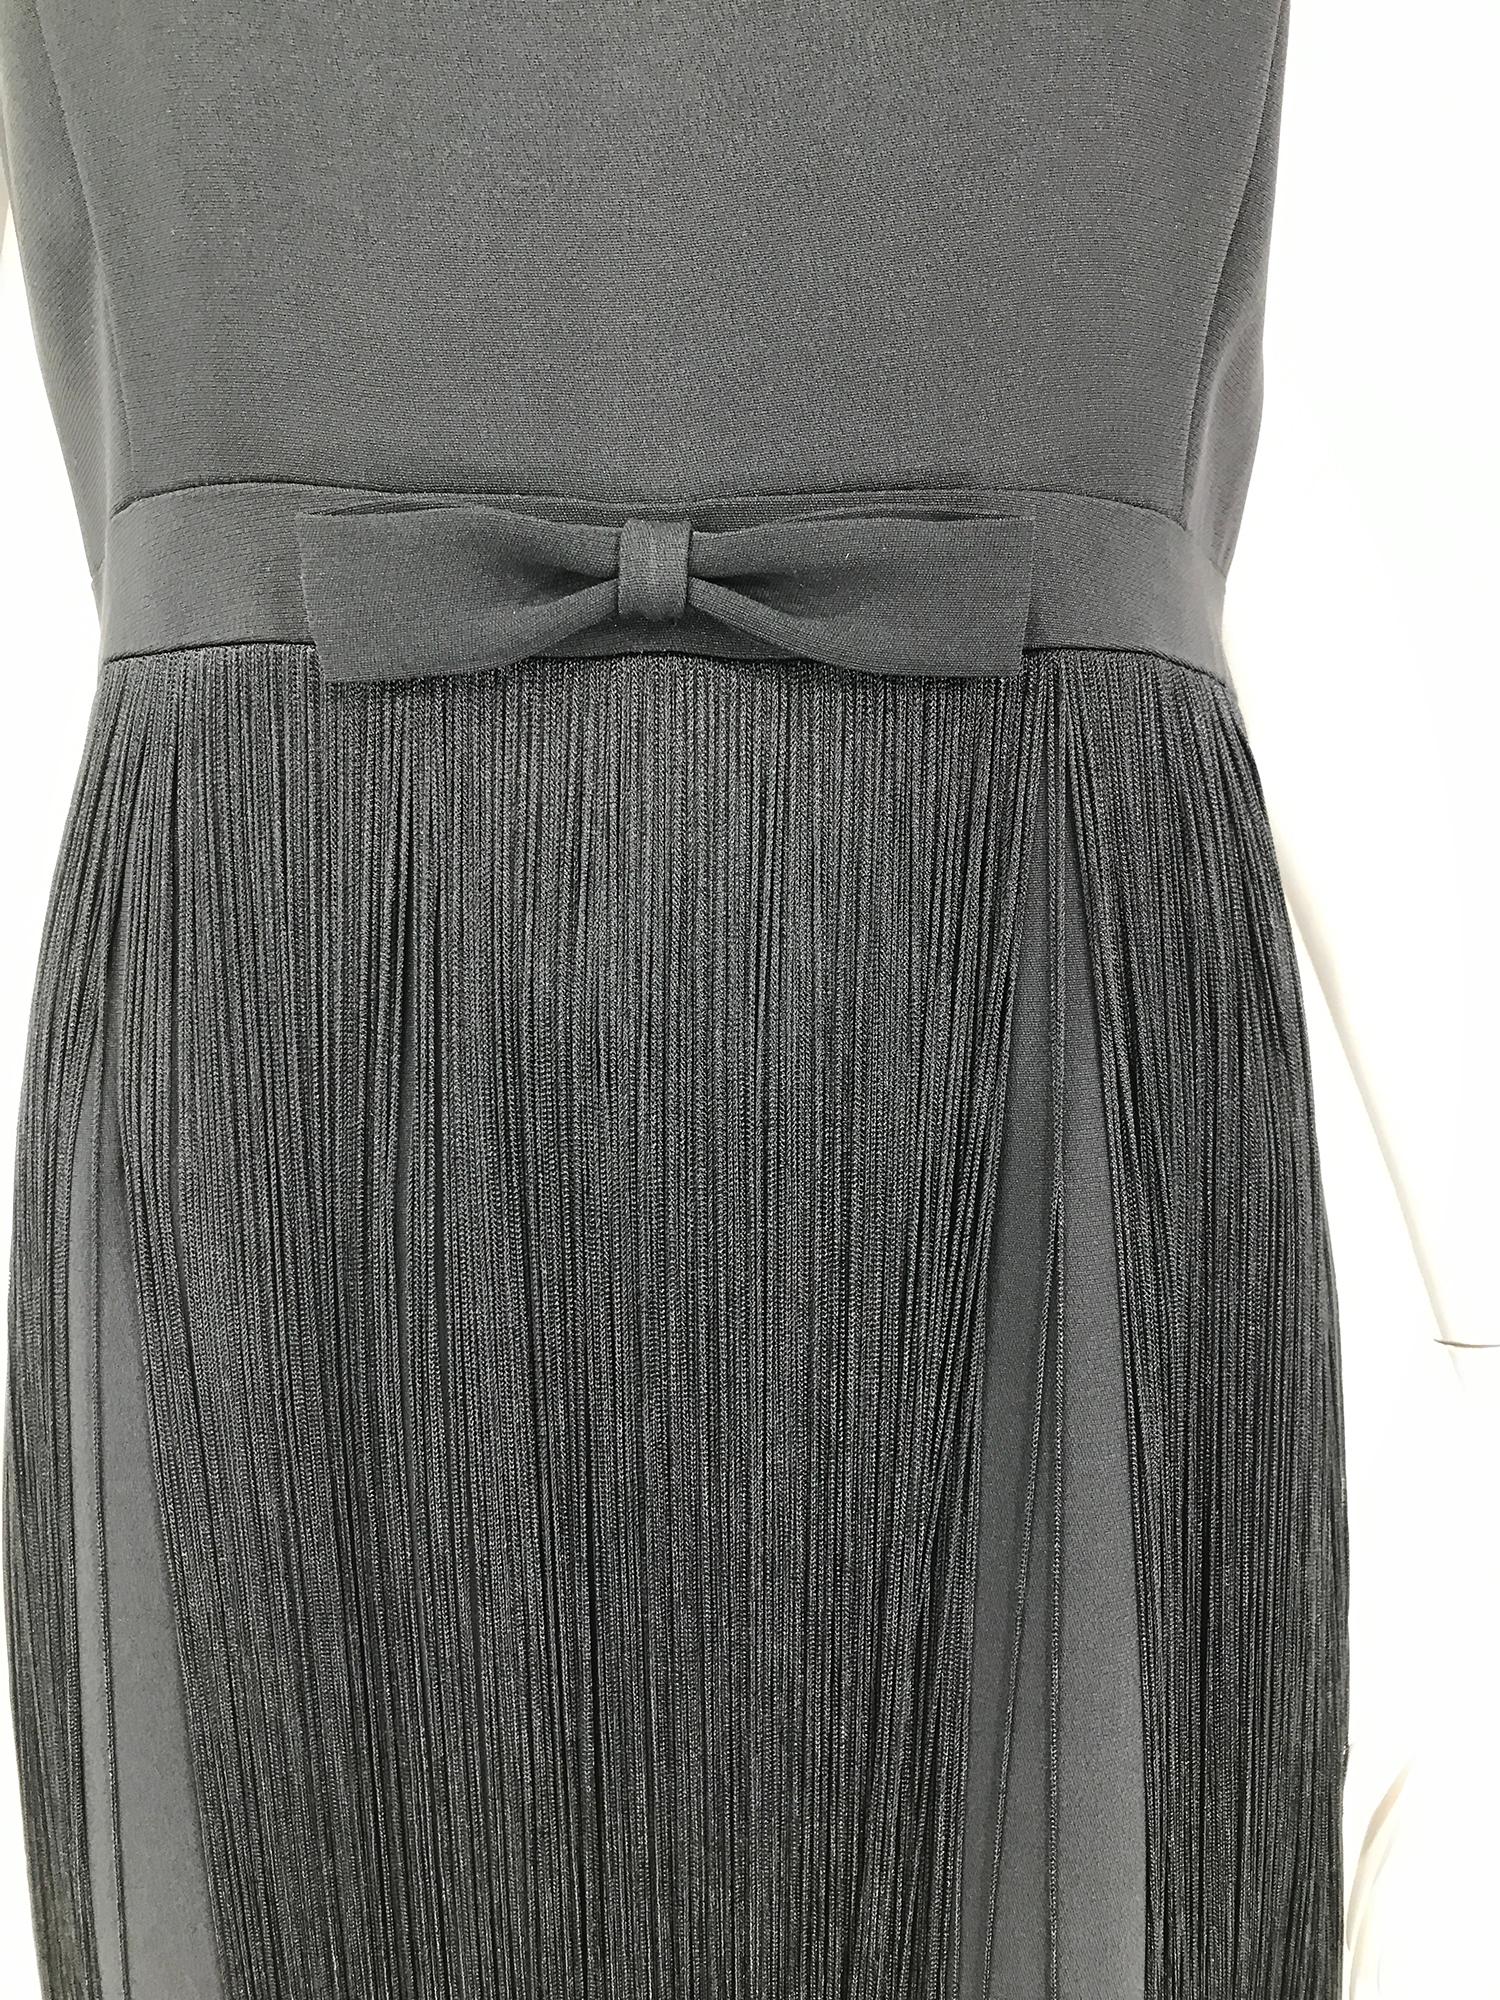 Moschino ärmelloses Kleid aus schwarzem Krepp mit Schleife an der Taille und Fransen aus den 1990er Jahren. Schmuckhals, ärmelloses Kleid mit abgeschrägtem Mieder und abgeschrägtem Mieder. Band-Taille mit einer abgeschrägten Schleife an der Taille